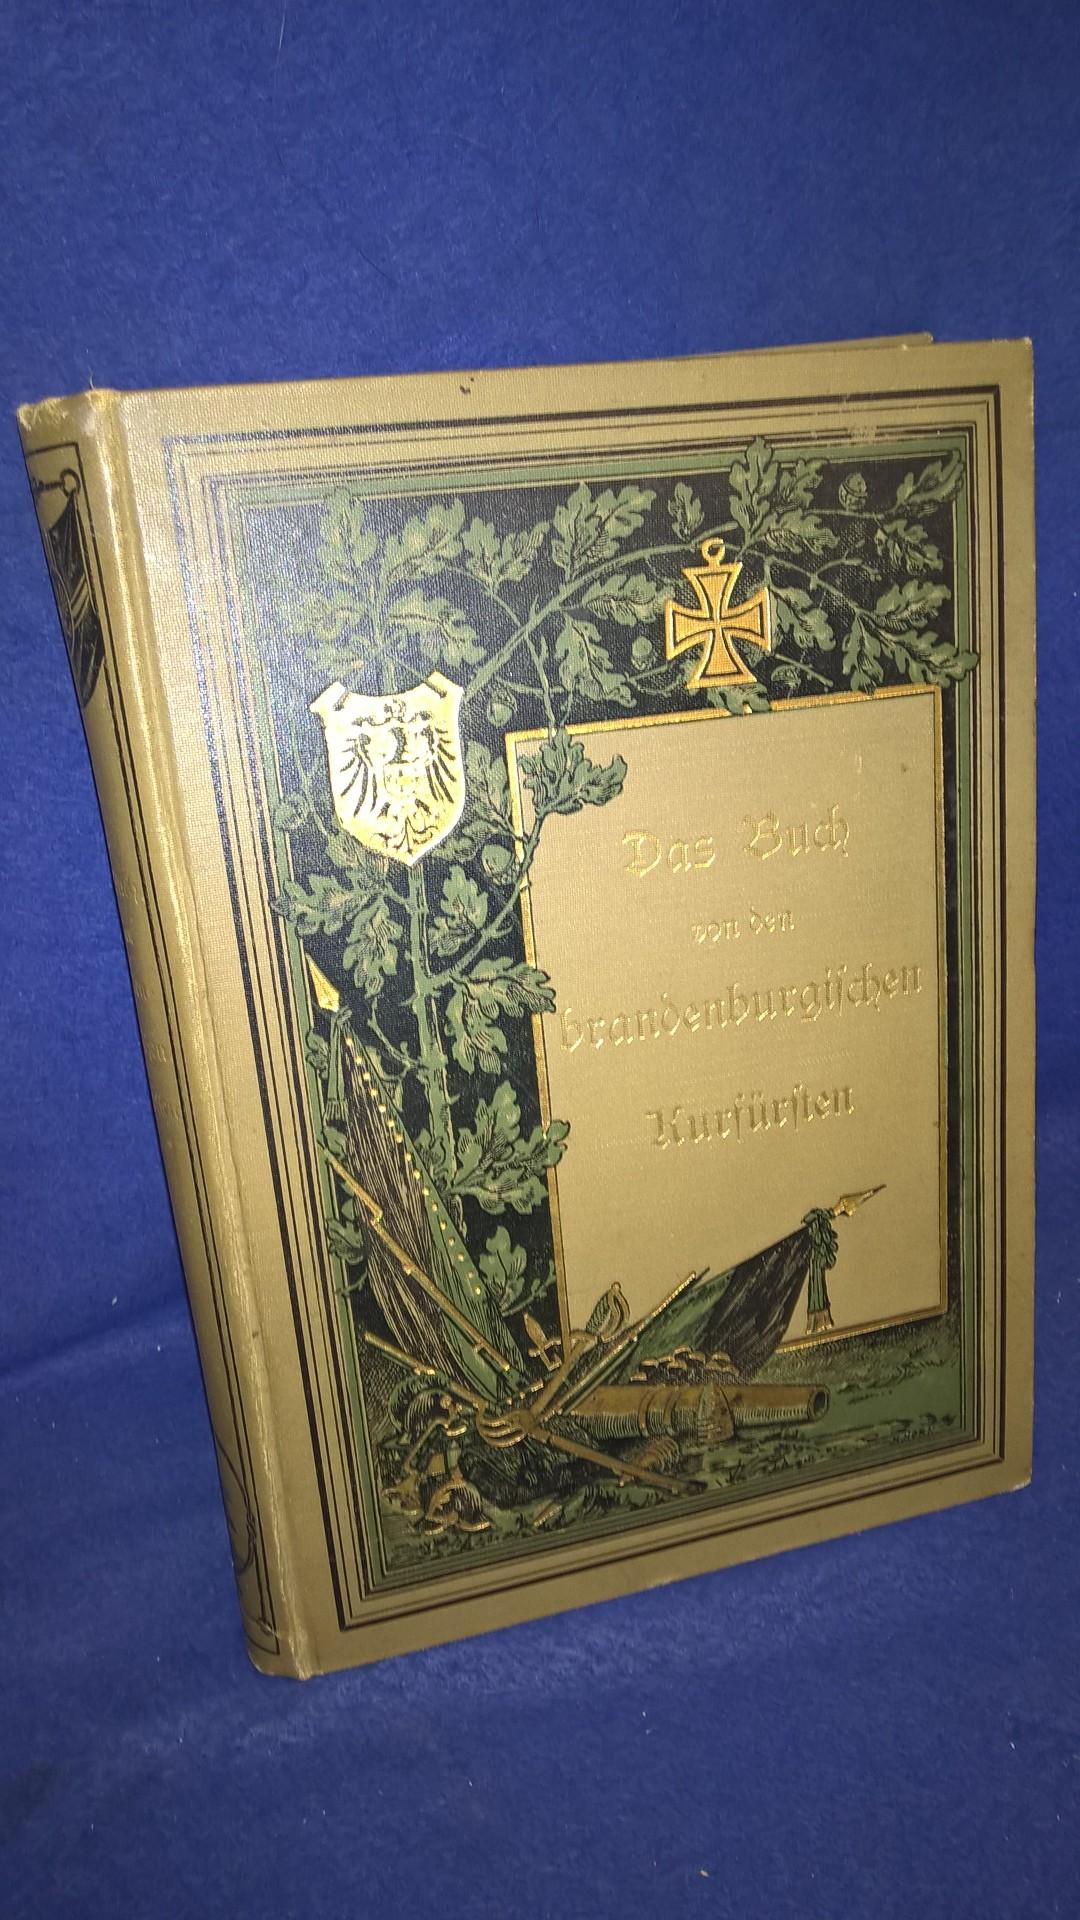 Das Buch von den brandenburgischen Kurfürsten aus dem Hause Hohenzollern.